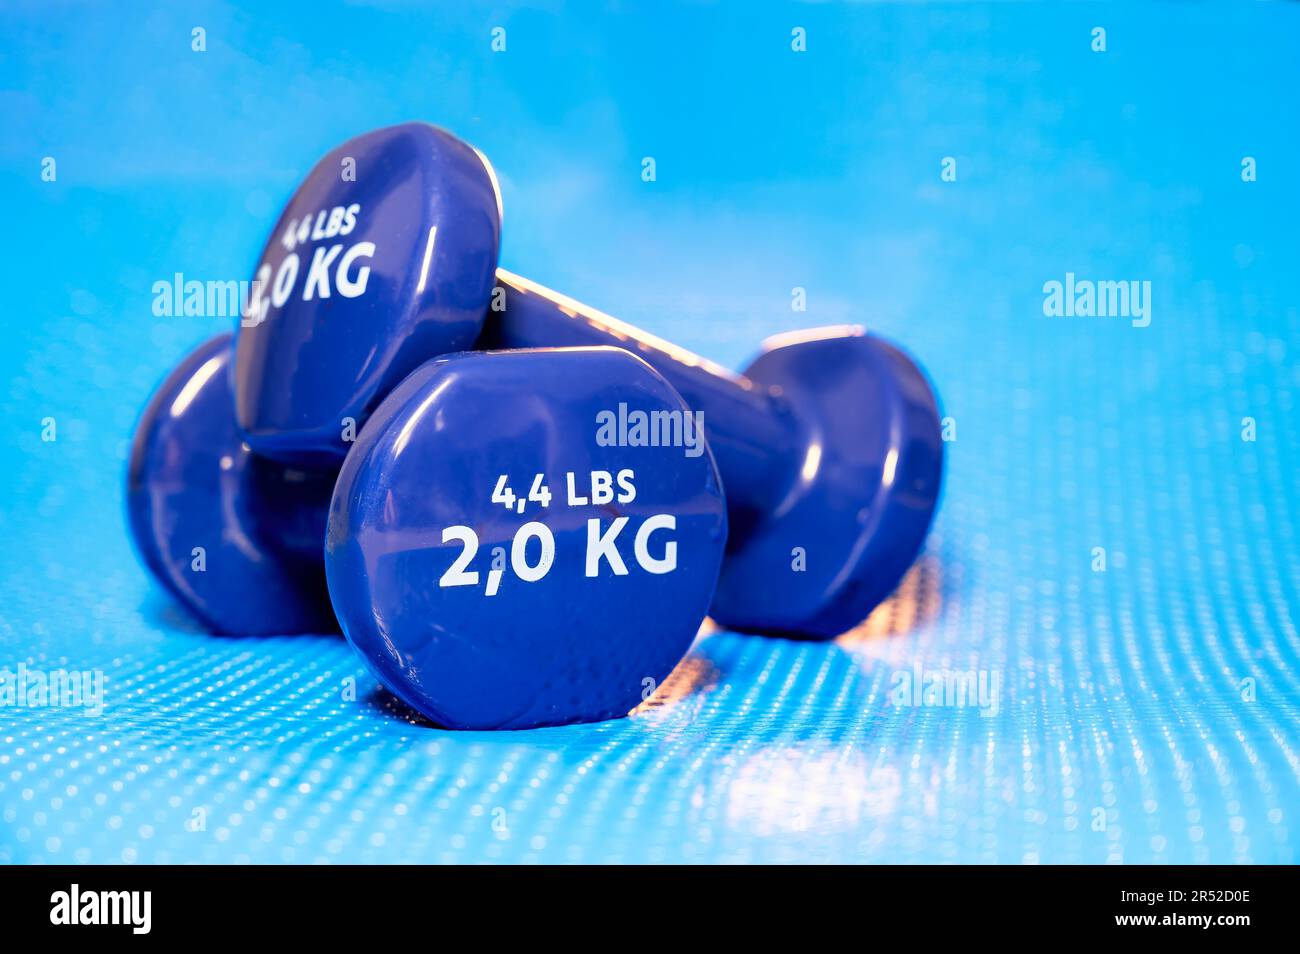 Petits haltères en vinyle bleu utilisés pour le yoga, les pilates et d'autres sports sur un tapis Banque D'Images